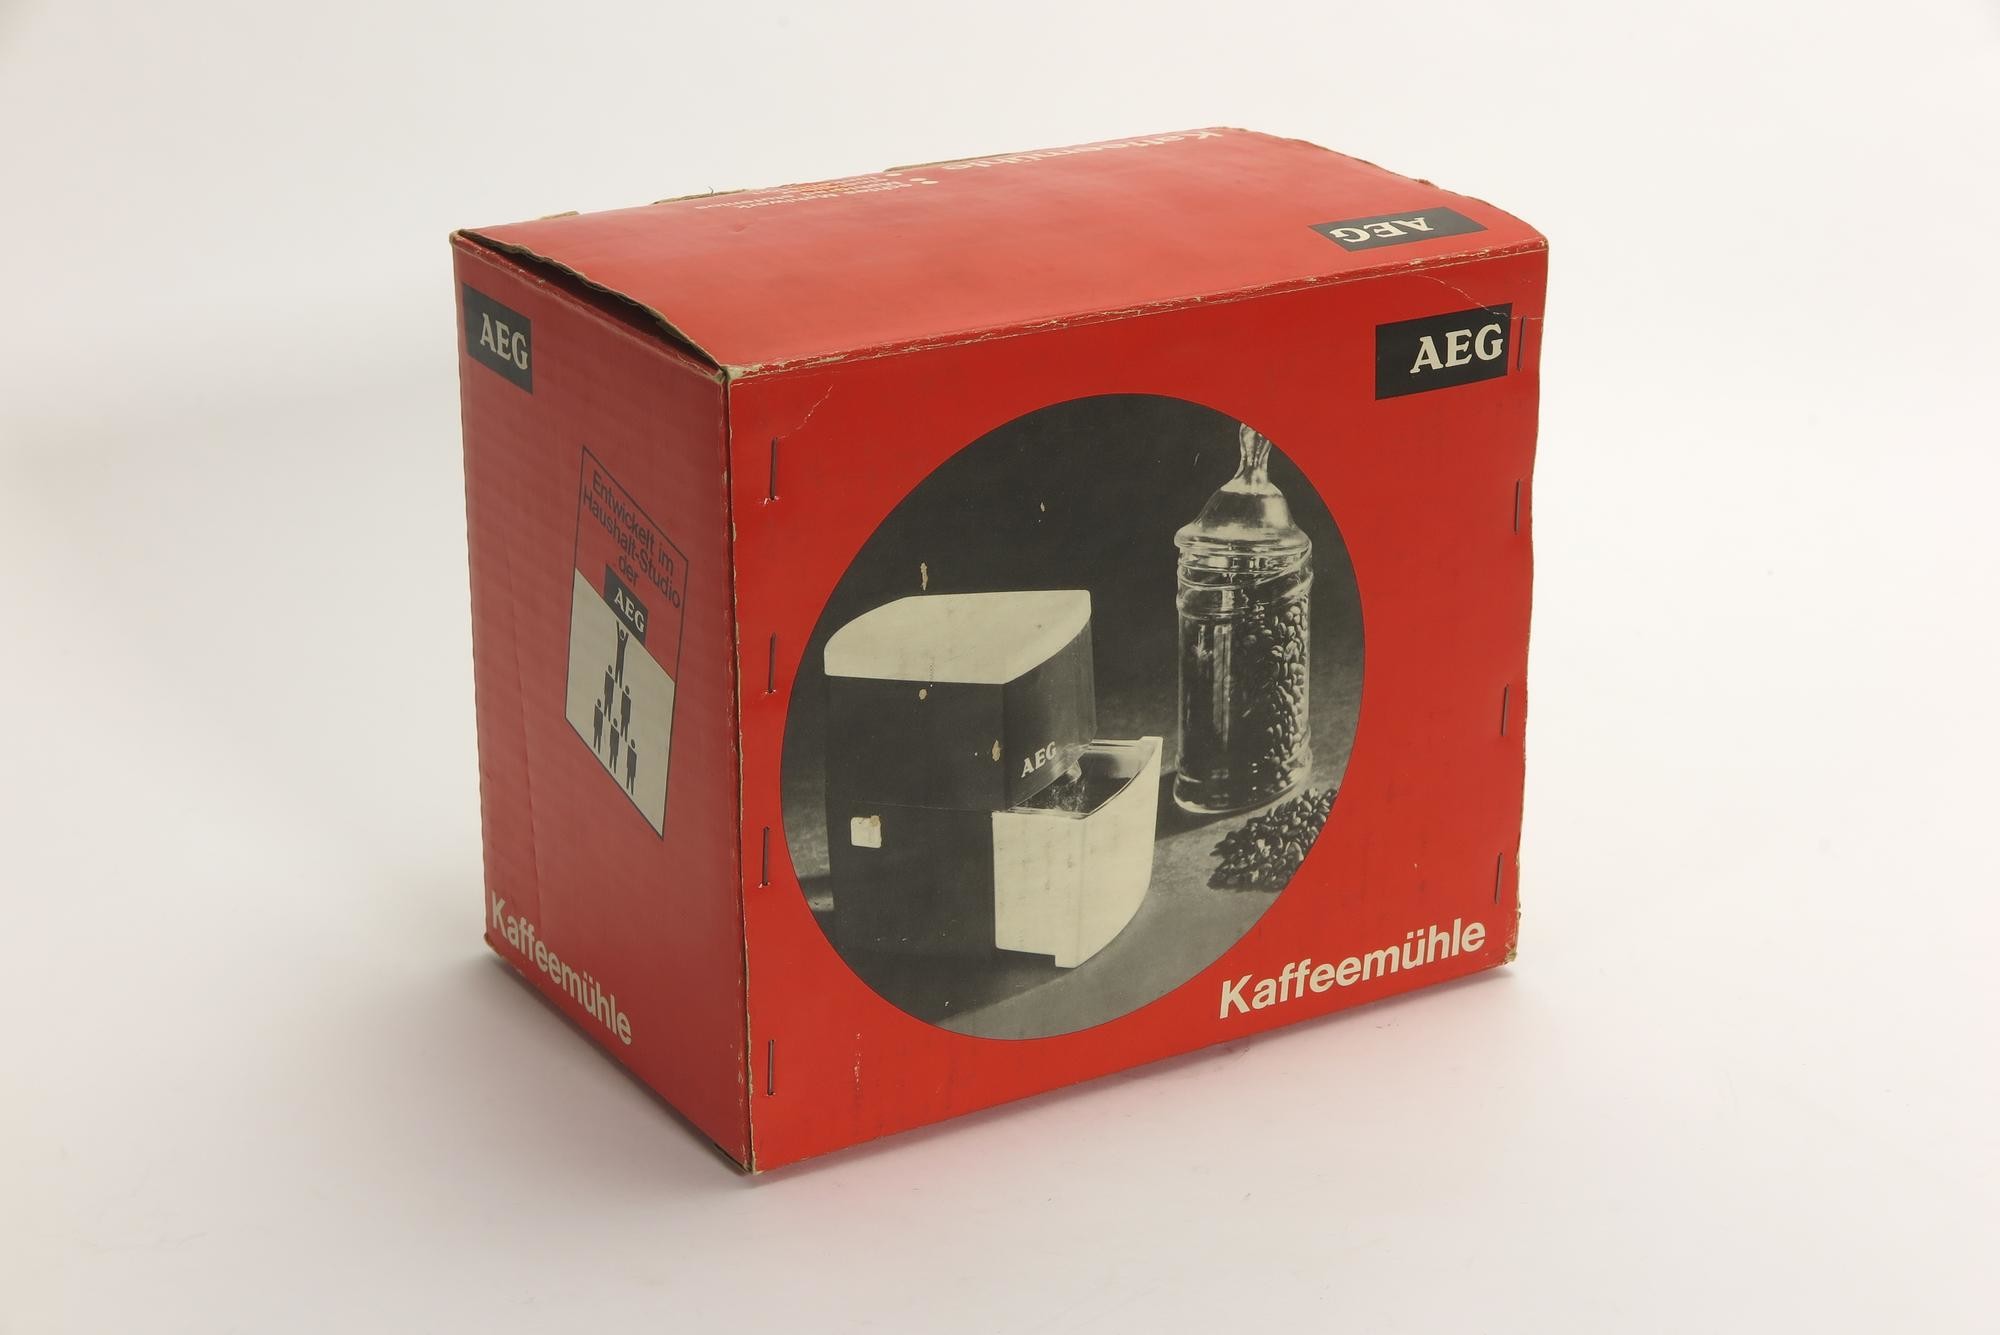 Verpackungskarton, Zubehör zu Elektrische Kaffeemühle AEG Typ KMU (Stiftung Deutsches Technikmuseum Berlin CC0)